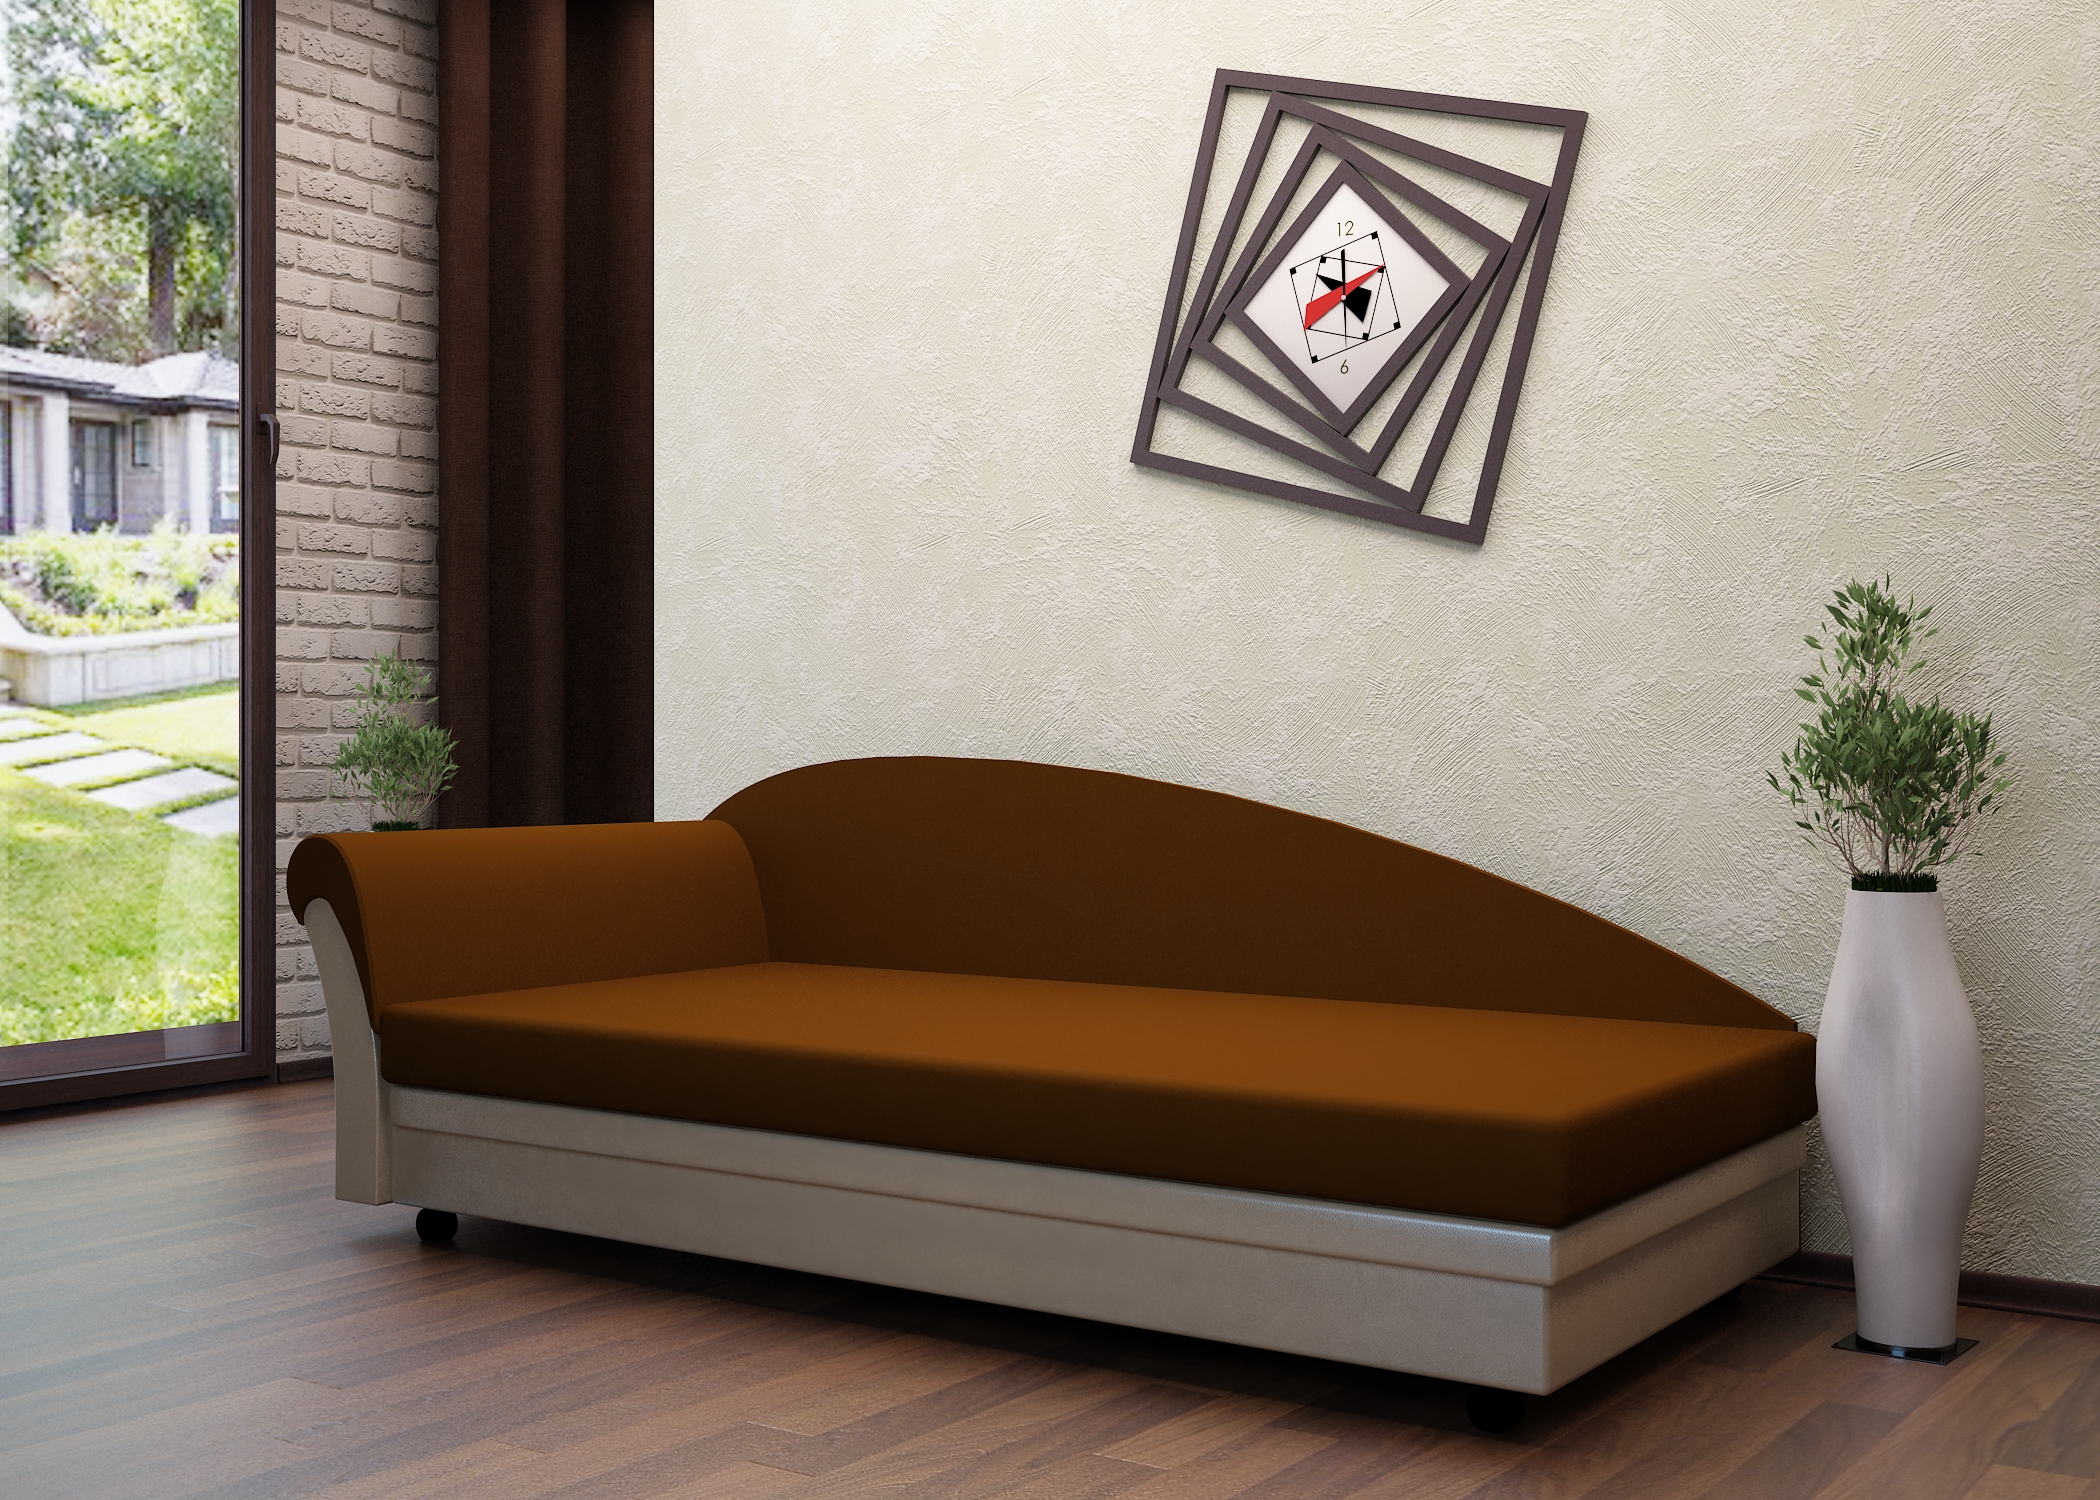 Софа — это разновидность дивана, отличия, устройство конструкции